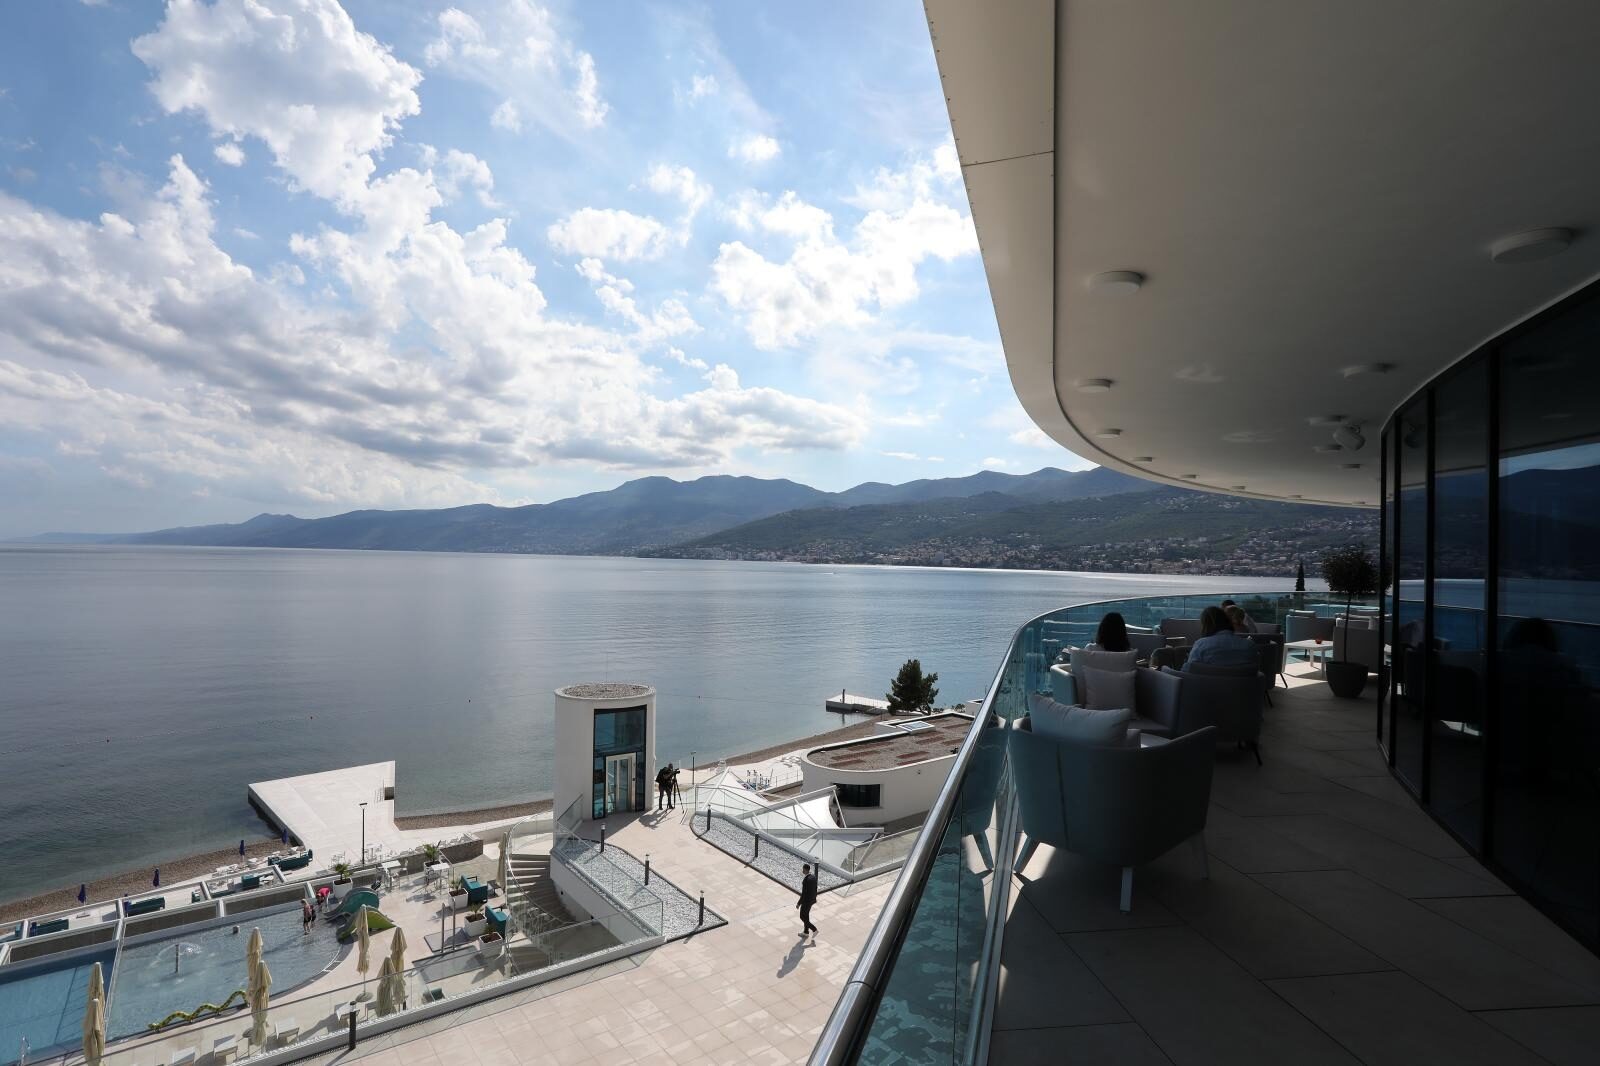 Pogled na novootvoreni hotel Hilton Costabella  u Rijeci